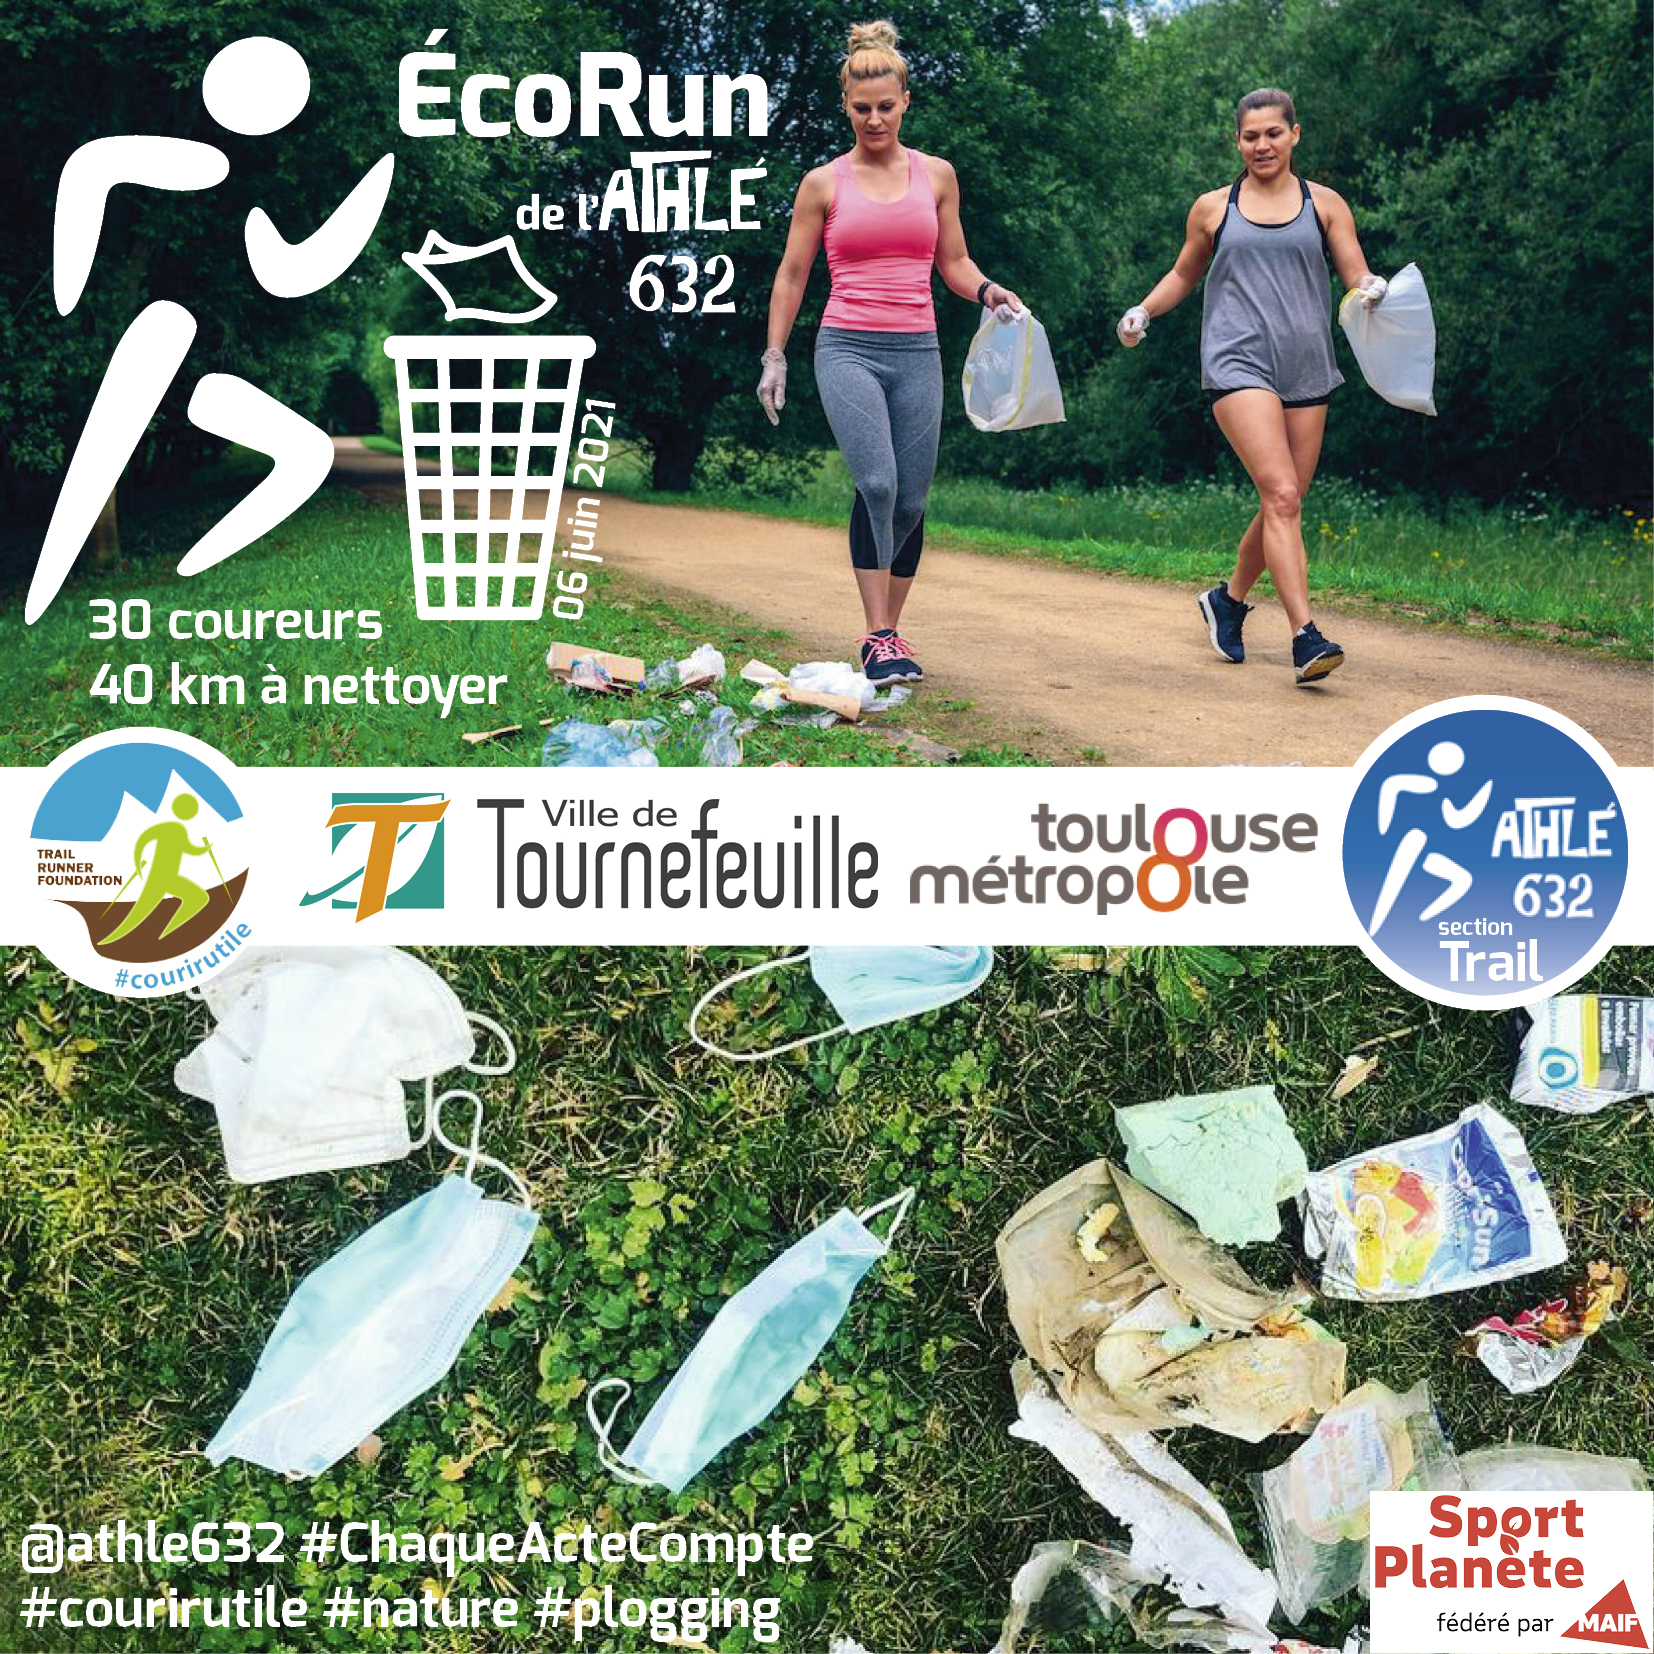 Affiche du projet dÉcoRun de lAthé632 à Tournefeuille 06 juin 2021 Facebook Instagram